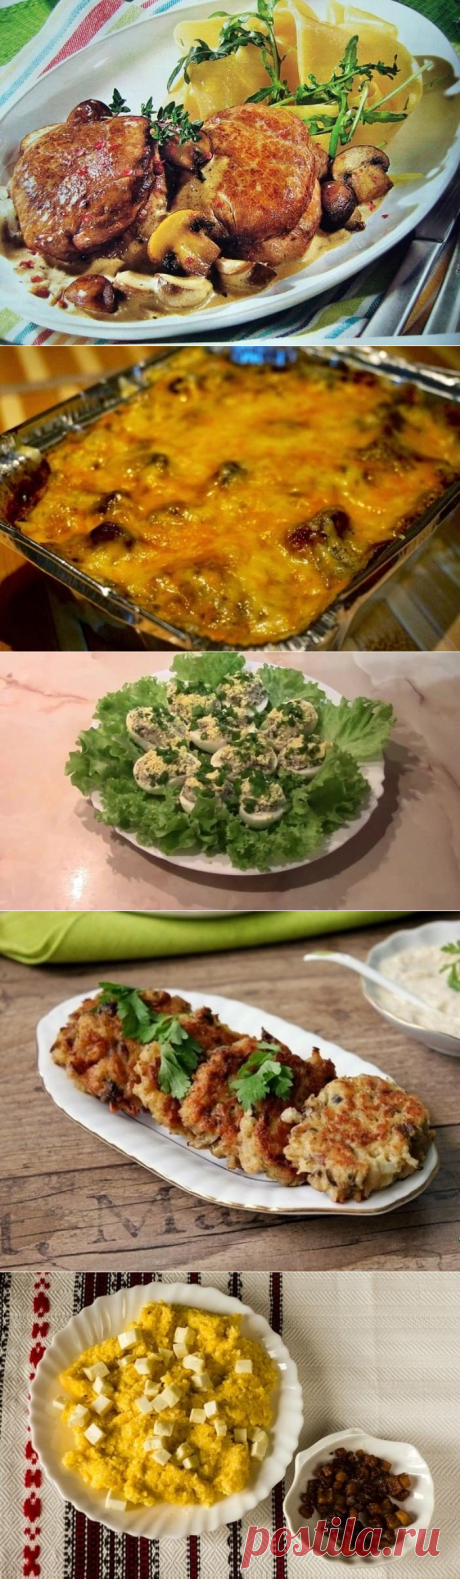 5 пикантных блюд с грибами